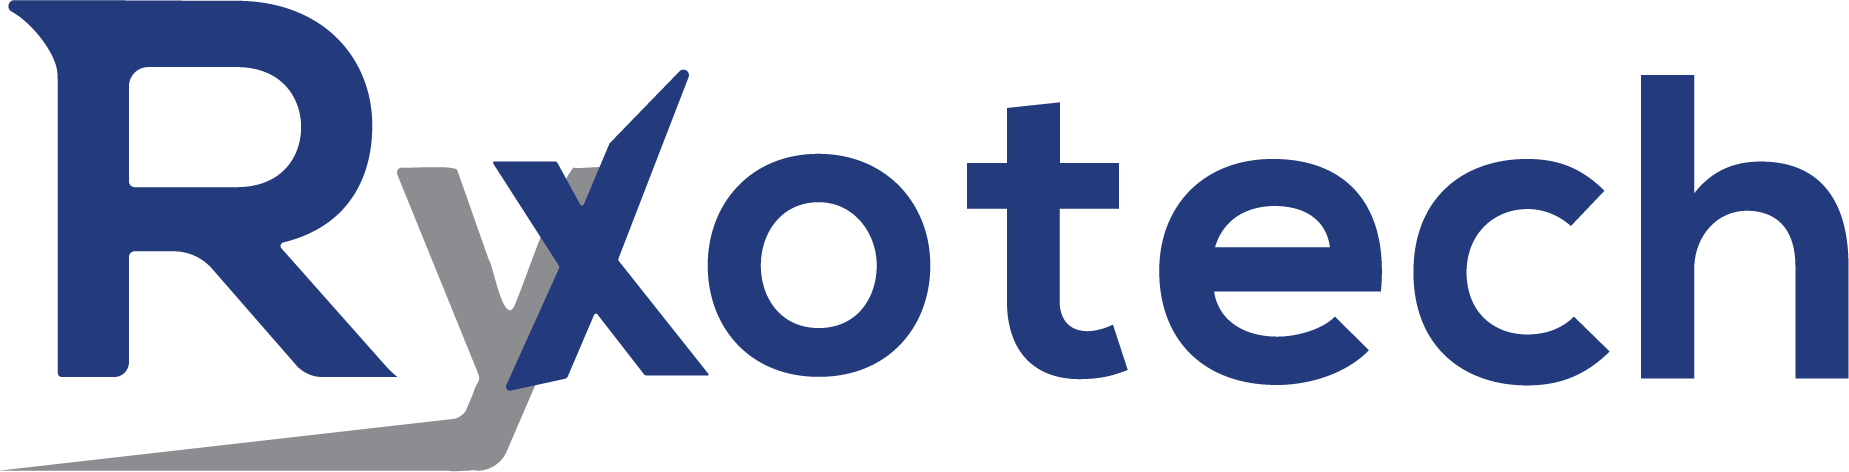 Ryxotech Pte. Ltd. logo